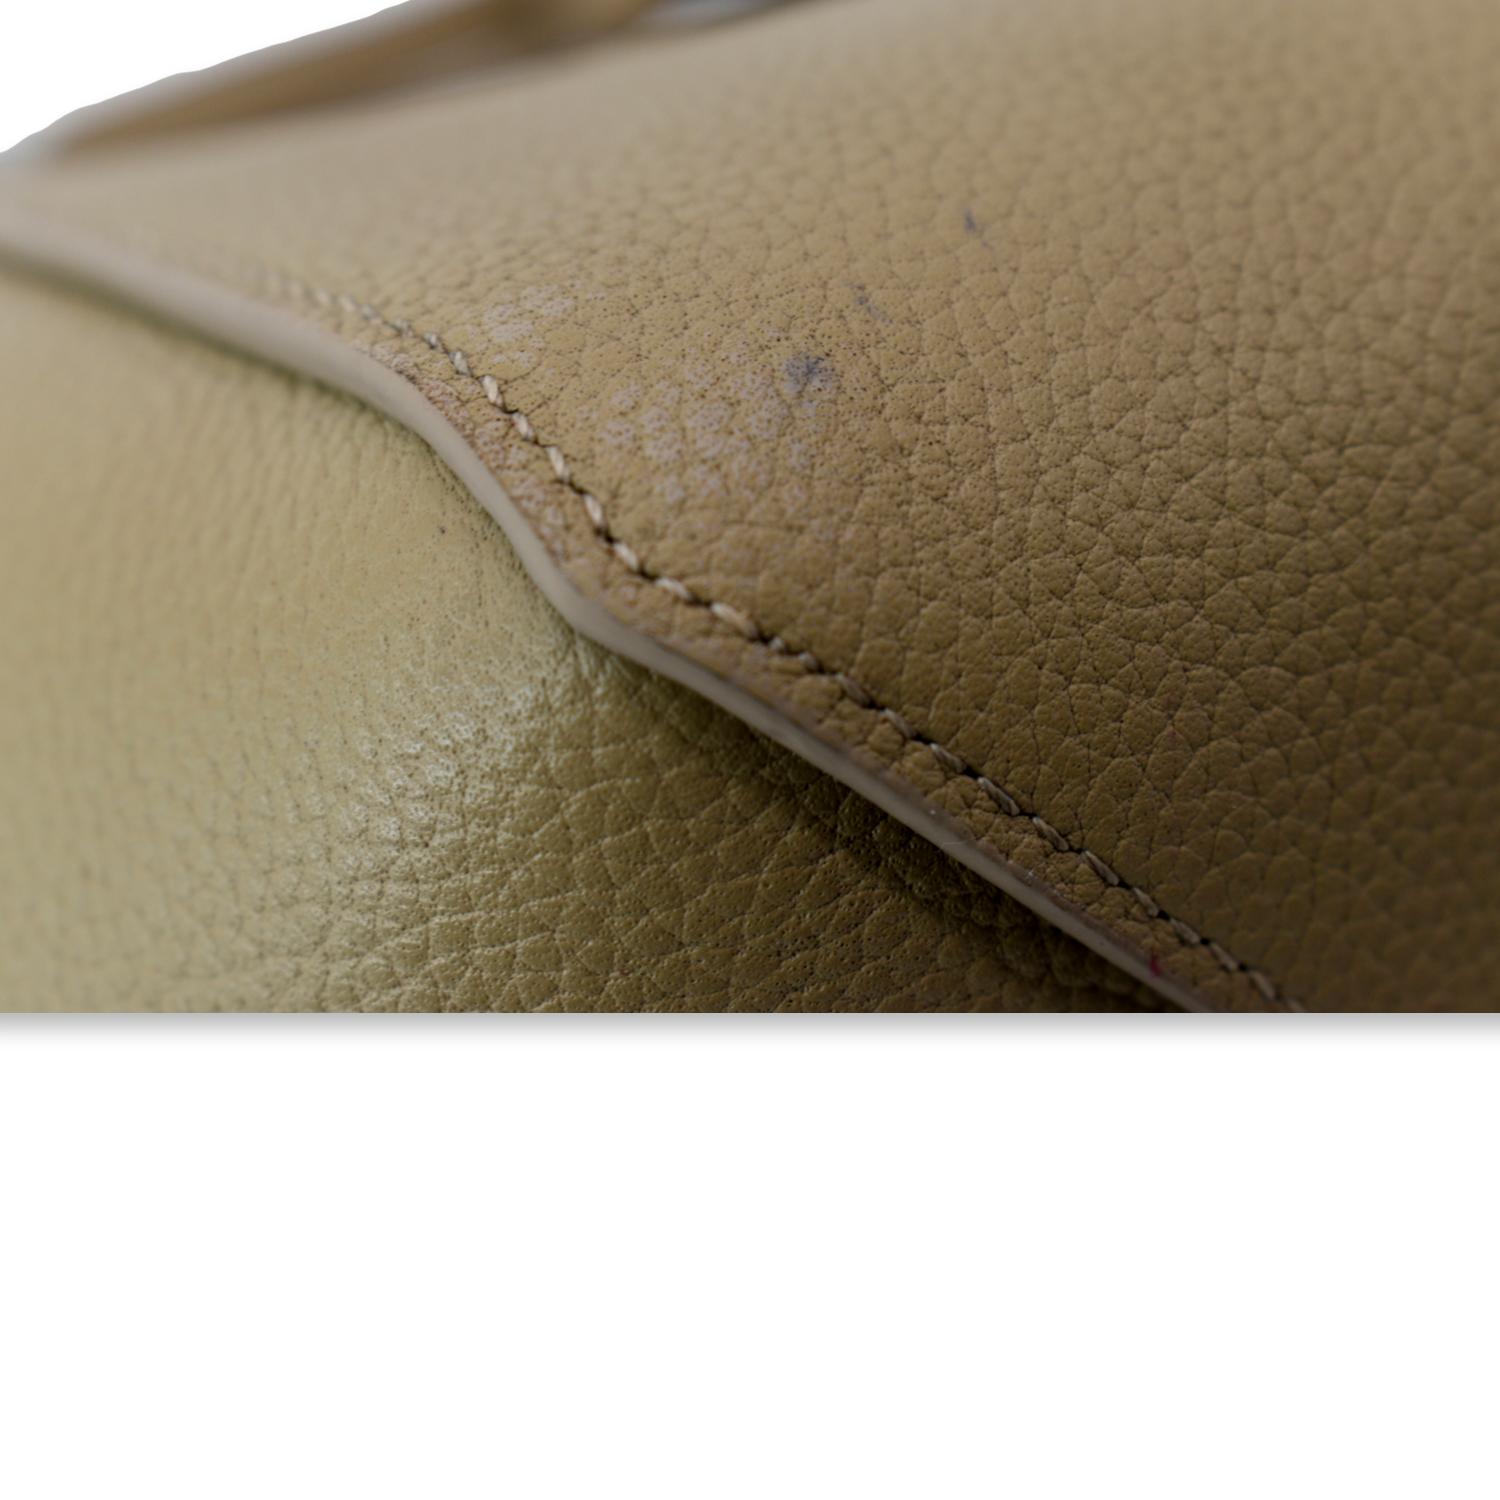 Celine Phantom Cabas Tote Cream Grained Leather Large Shoulder Bag